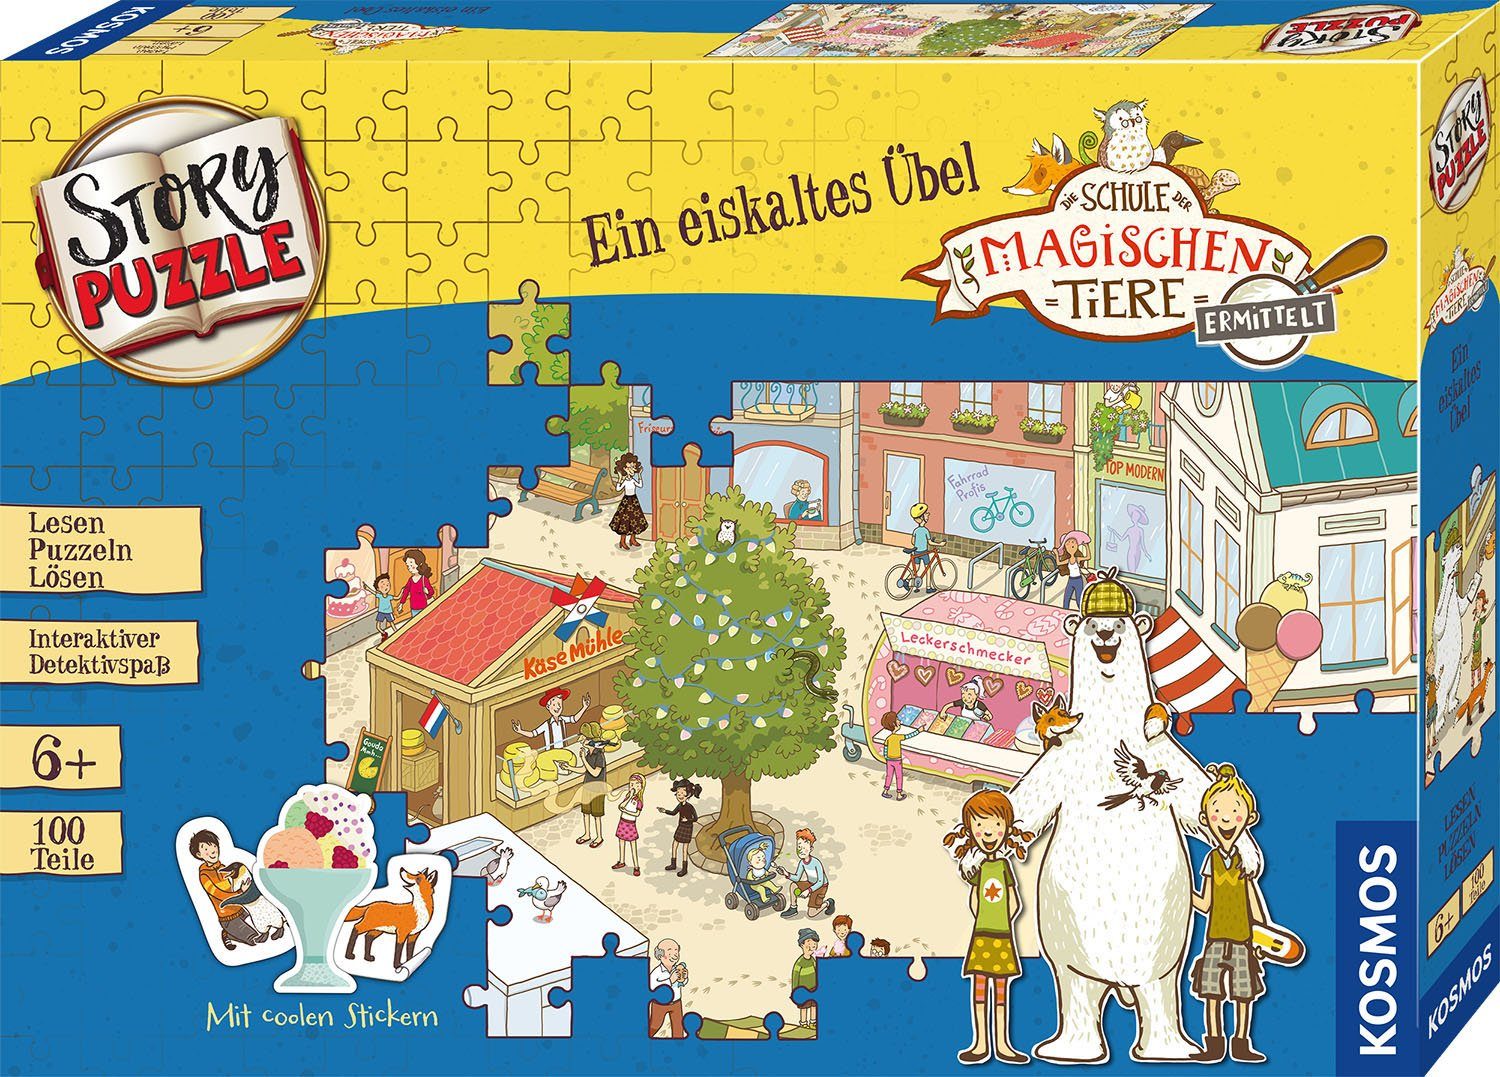 Puzzleteile, Tiere 100 Made magischen Storypuzzle, Puzzle der ermittelt, Germany in eiskaltes Übel, Ein Schule Kosmos